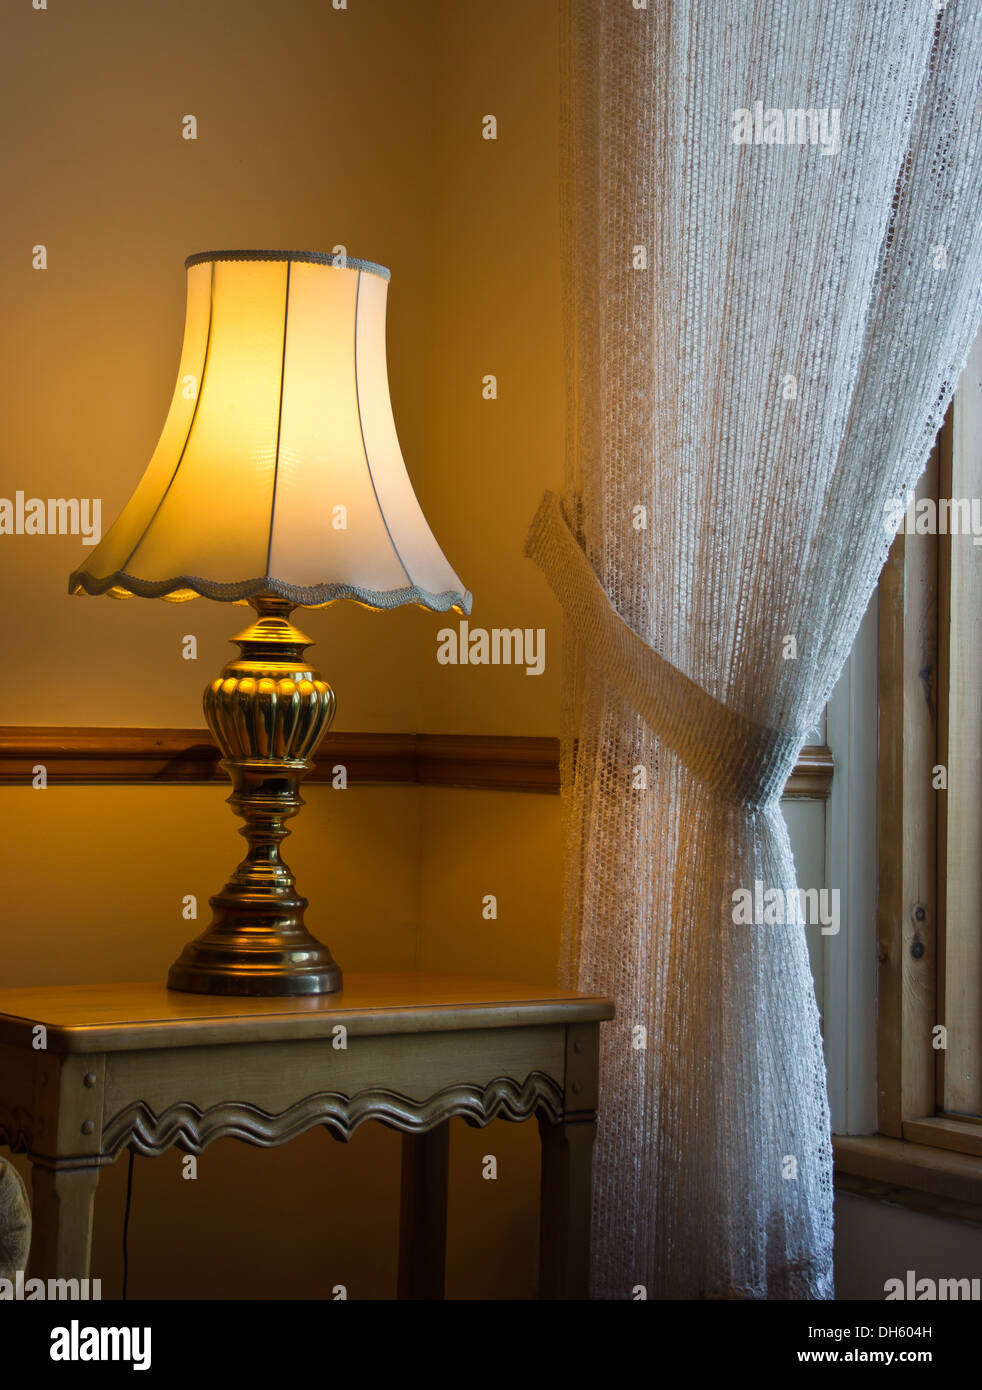 Antike Lampe auf Beistelltisch in Lobby Hotel Tadoussac, Quebec Saguenay  Stockfotografie - Alamy